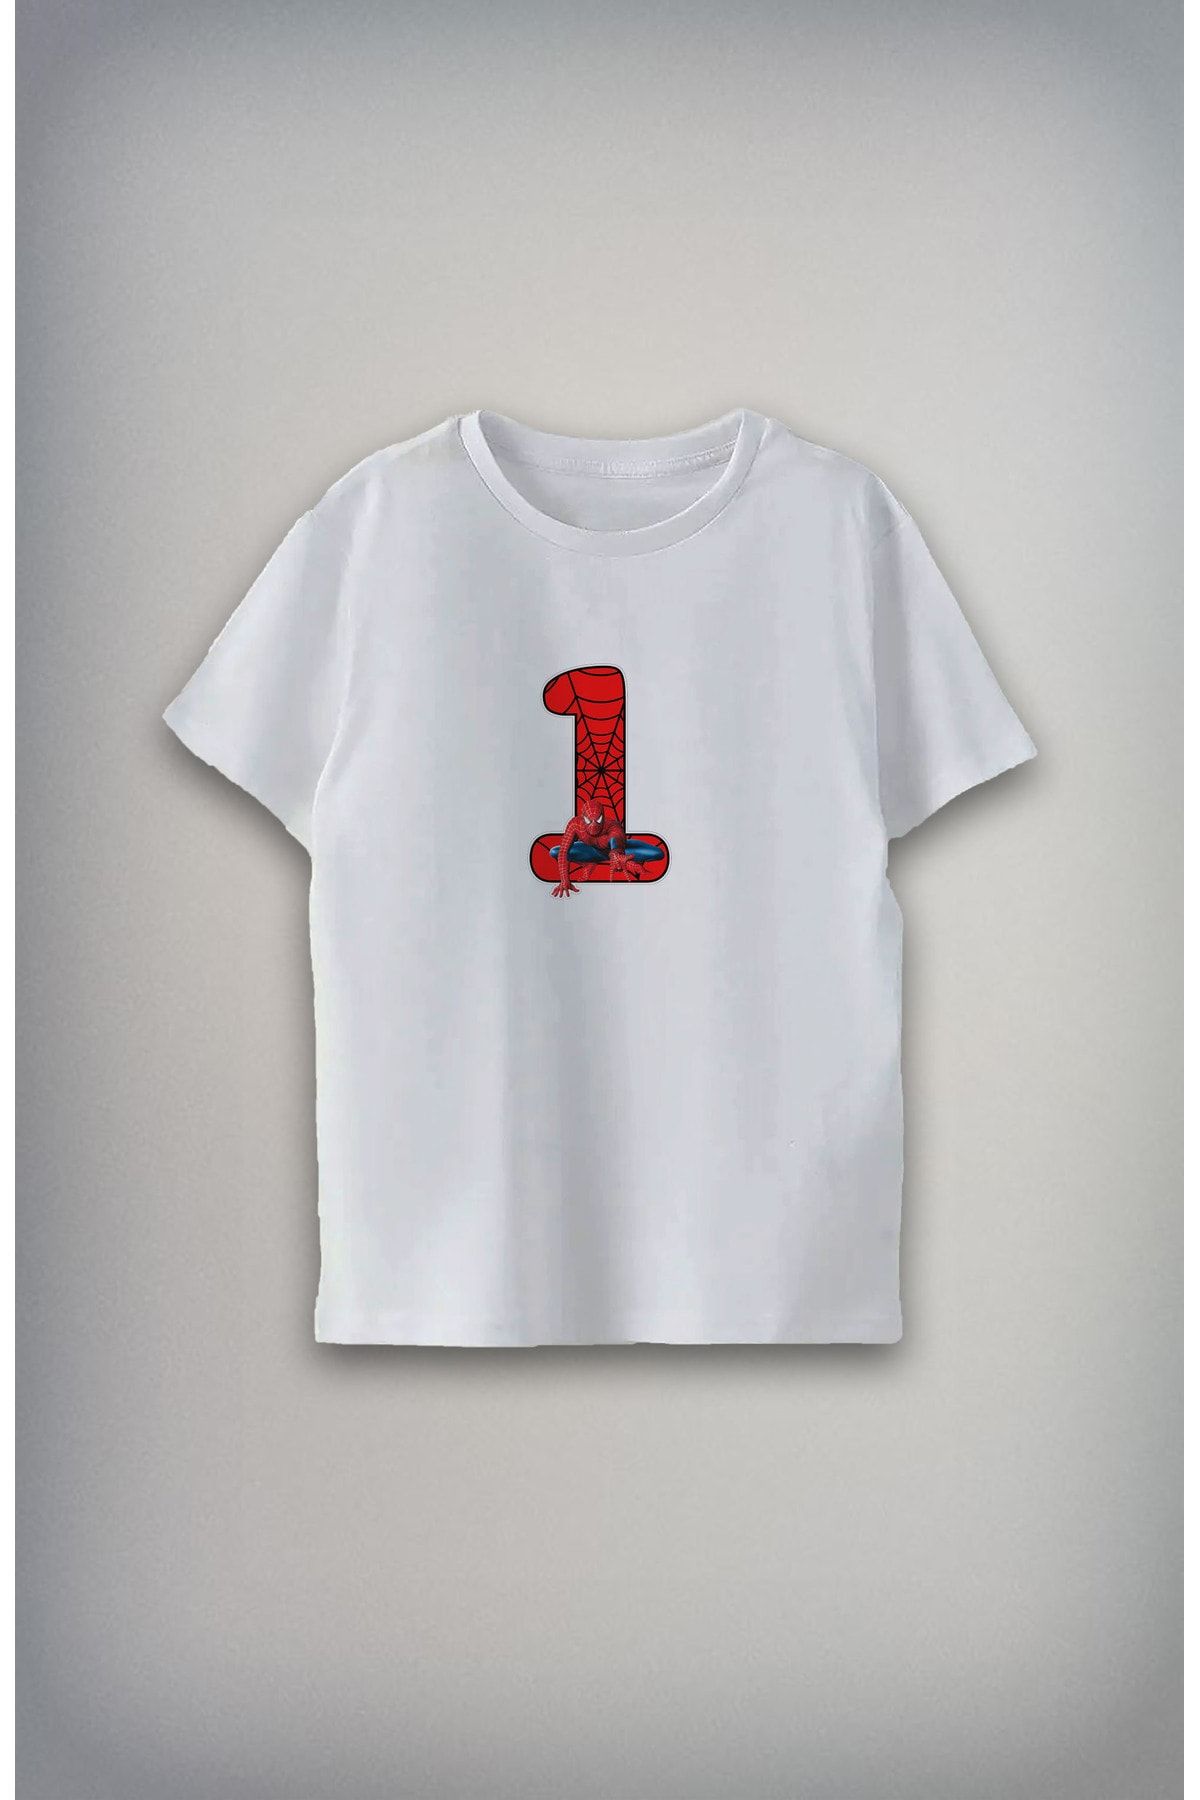 Darkia 1 yaş Özel Tasarım Baskılı Unisex Çocuk T-shirt Tişört